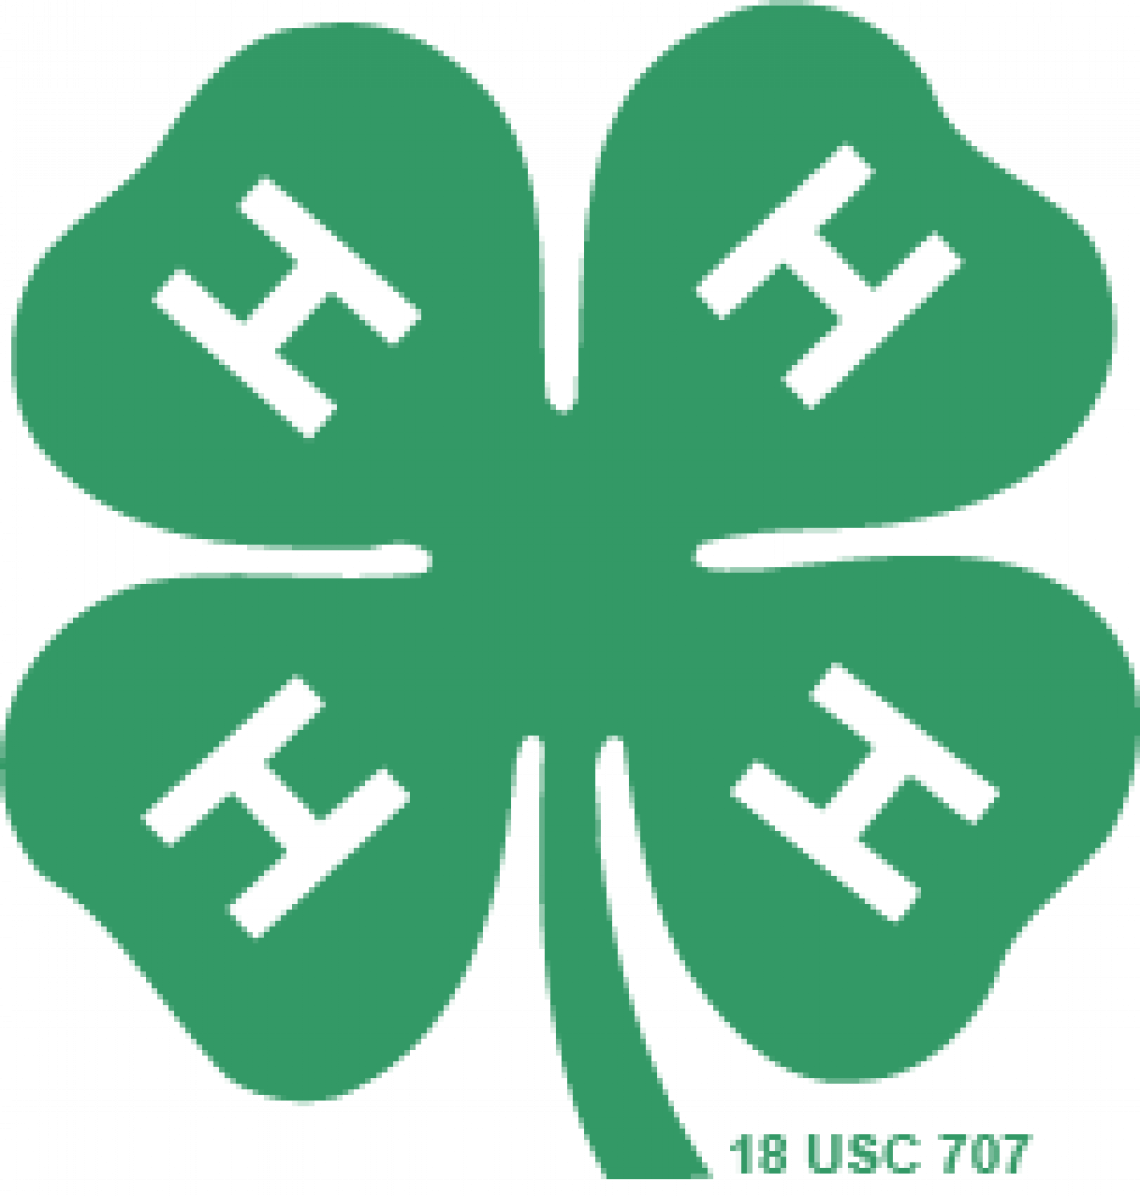 4-h logo